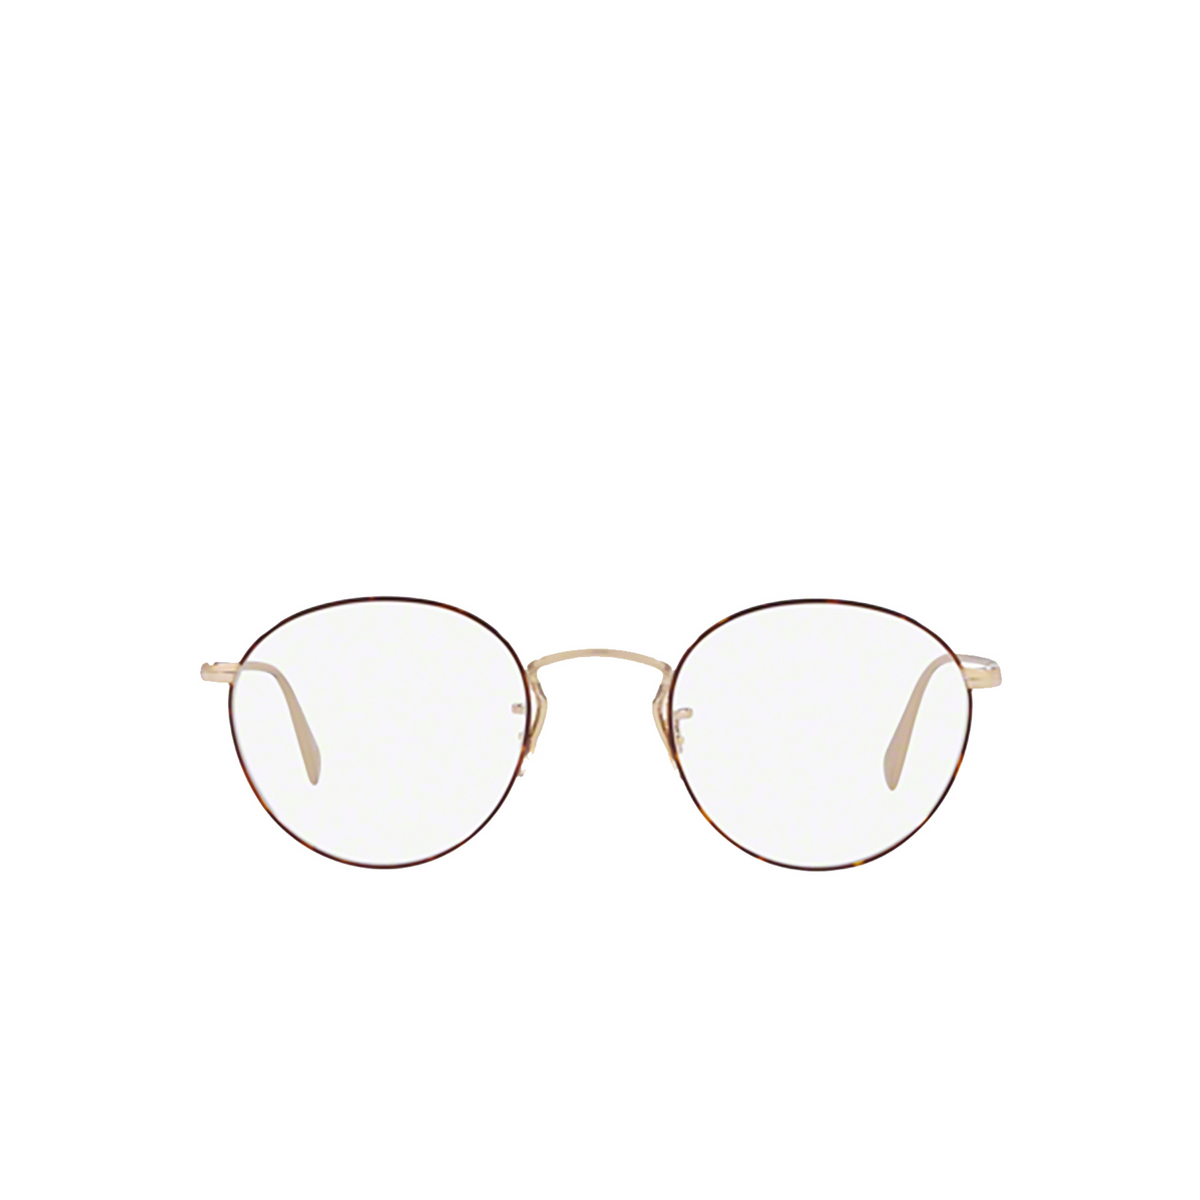 Oliver Peoples® Round Eyeglasses: Coleridge OV1186 color Soft Gold / Amber Dtbk Foil 5295 - front view.